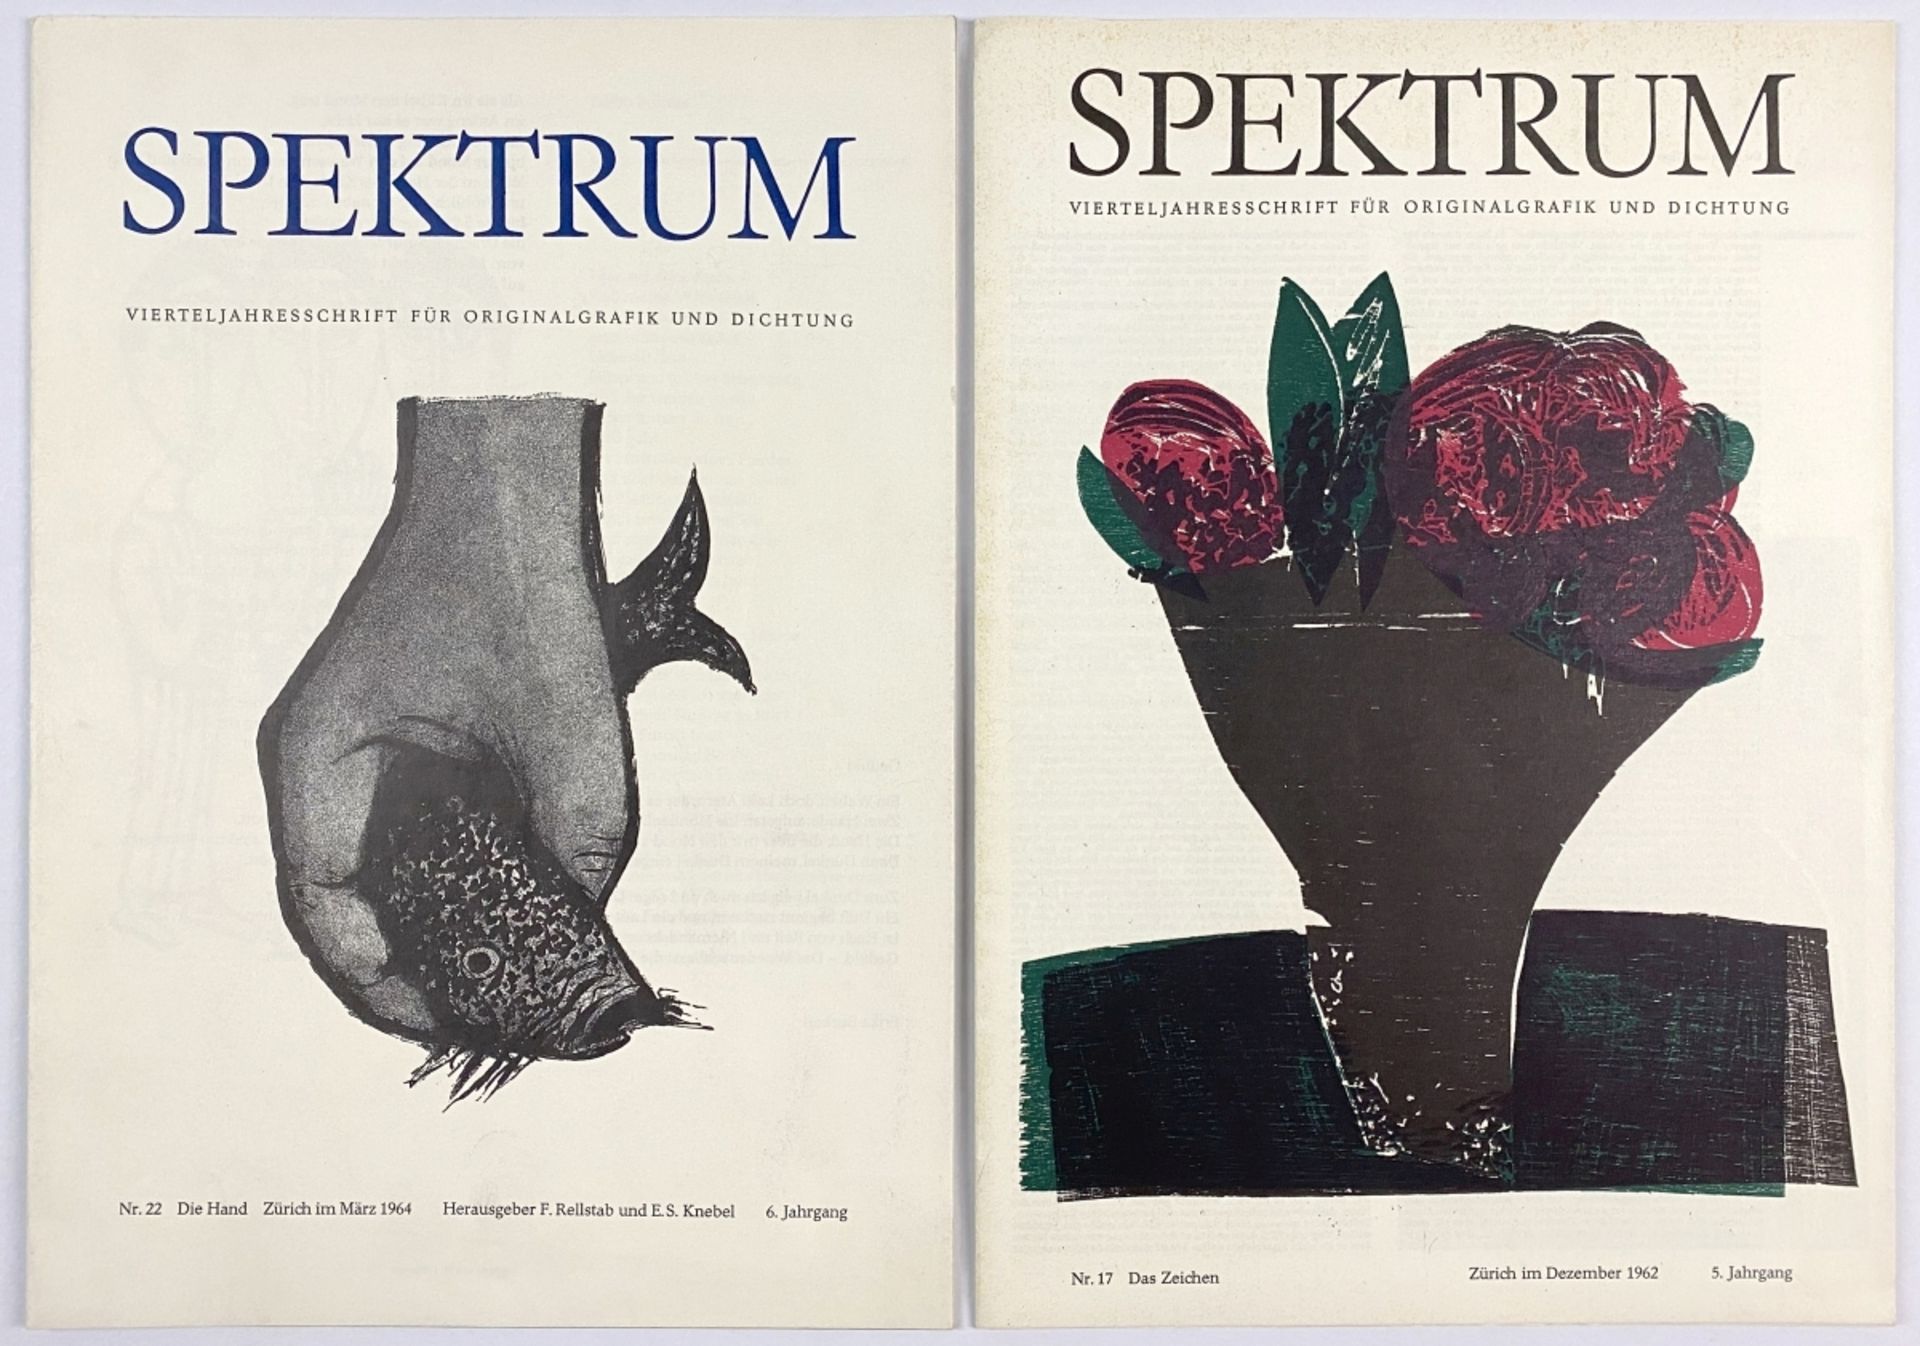 SPEKTRUM, Vierteljahresschrift für Originalgrafik und Dichtung, Zwei Zeitschriften - Bild 2 aus 2